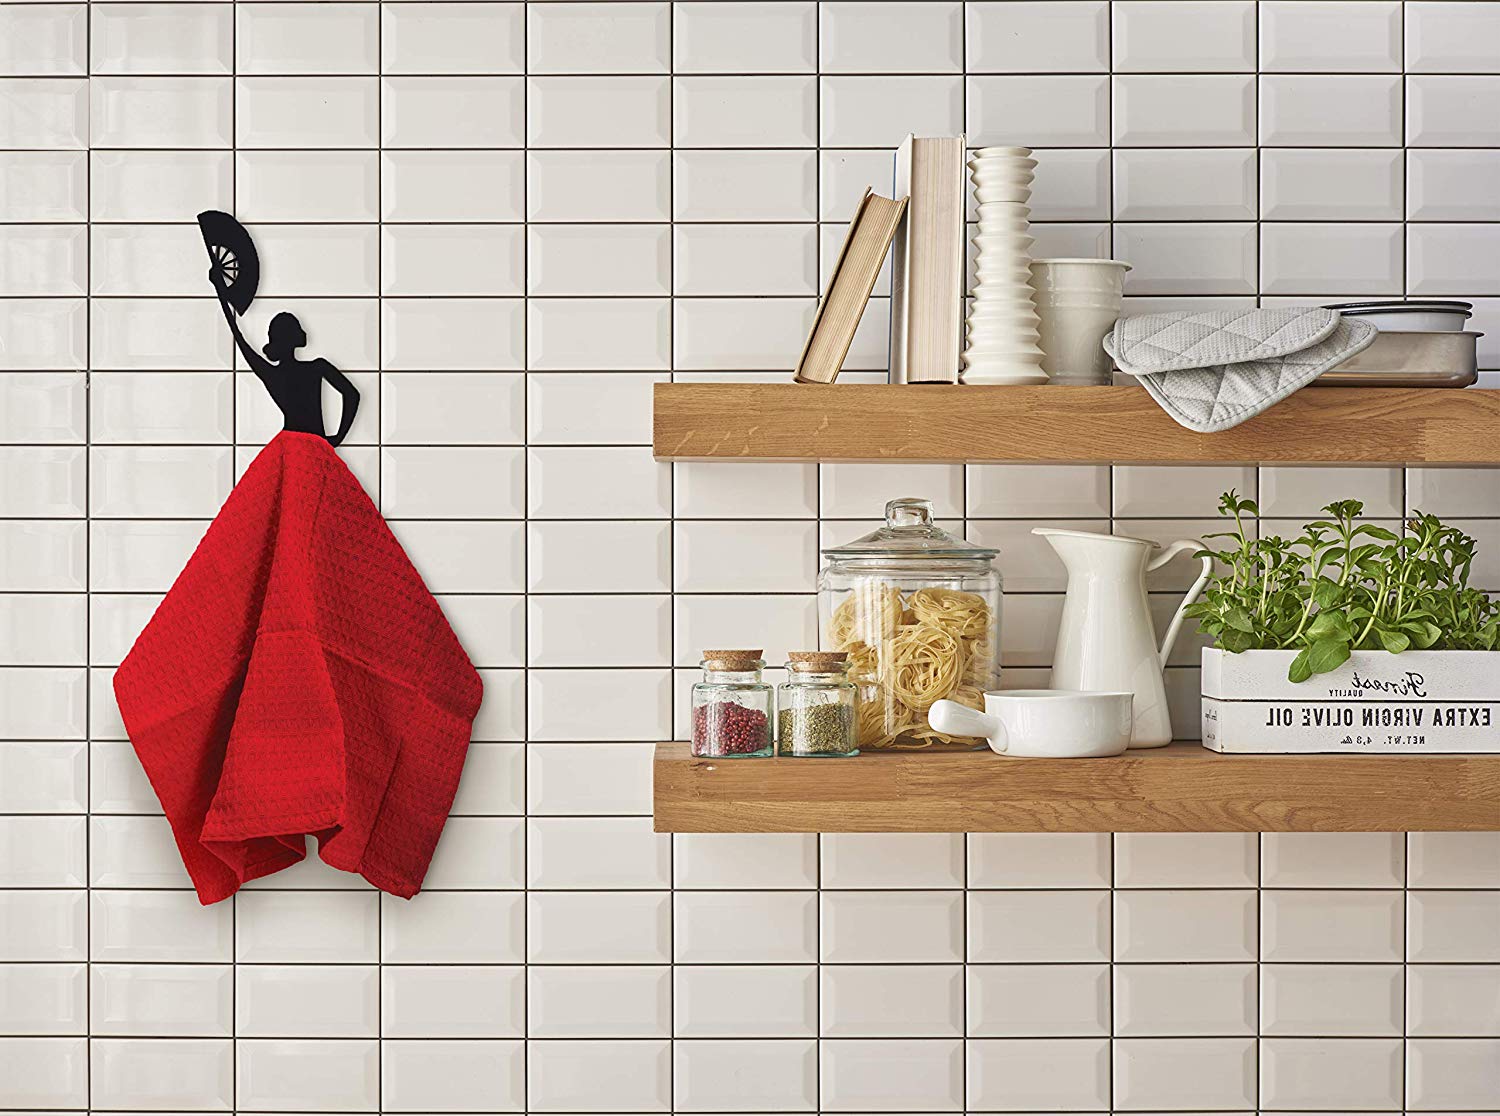 Artori Design Flamenco Dancer Kitchen Towel Hanger